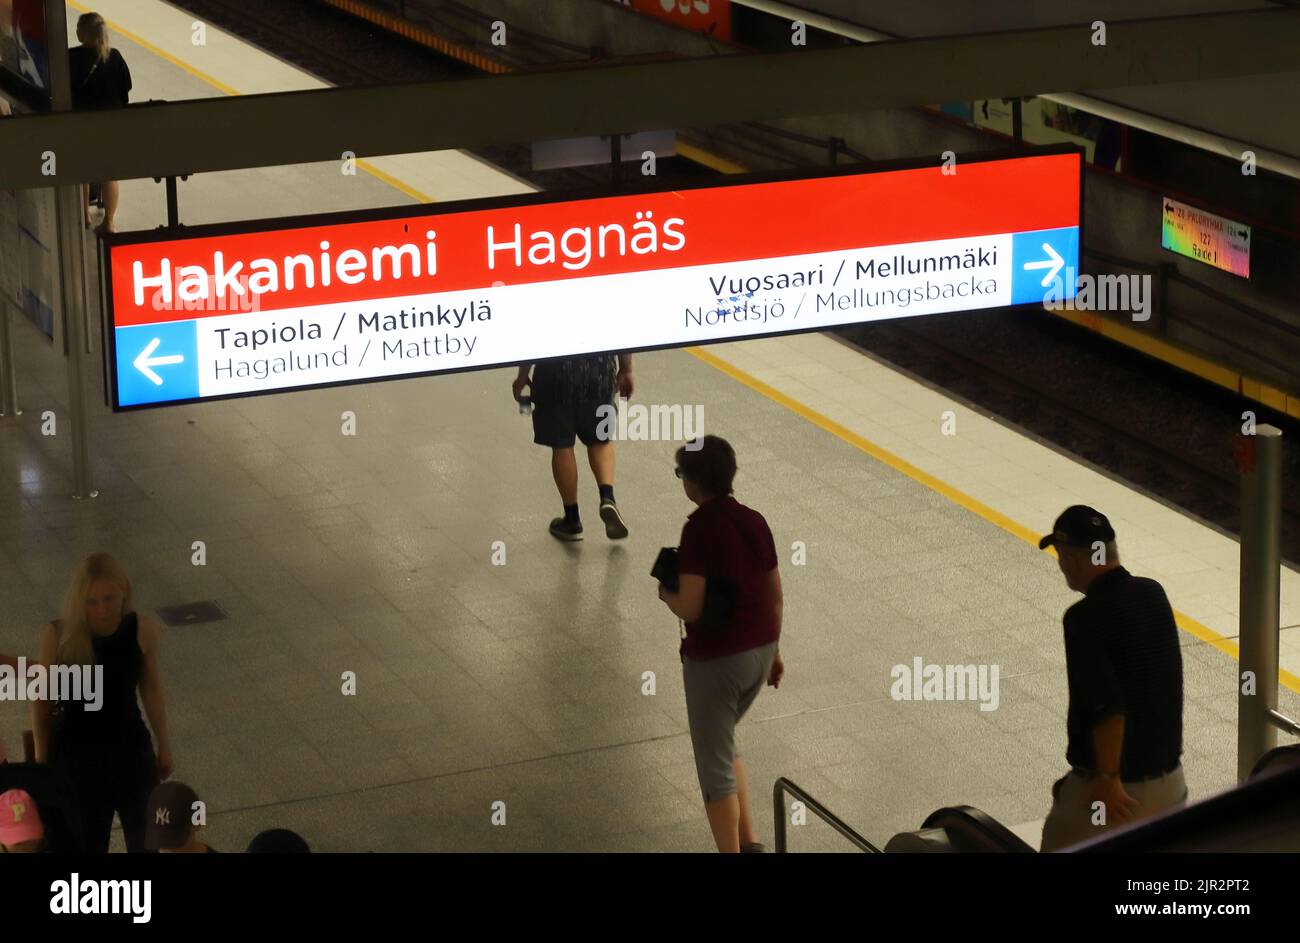 Helsinki, Finnland - 20. August 2022: Blick auf die Helsinki Metro Station Hakaninemi zweisprachiges Informationsschild in finnischer und schwedischer Sprache. Stockfoto